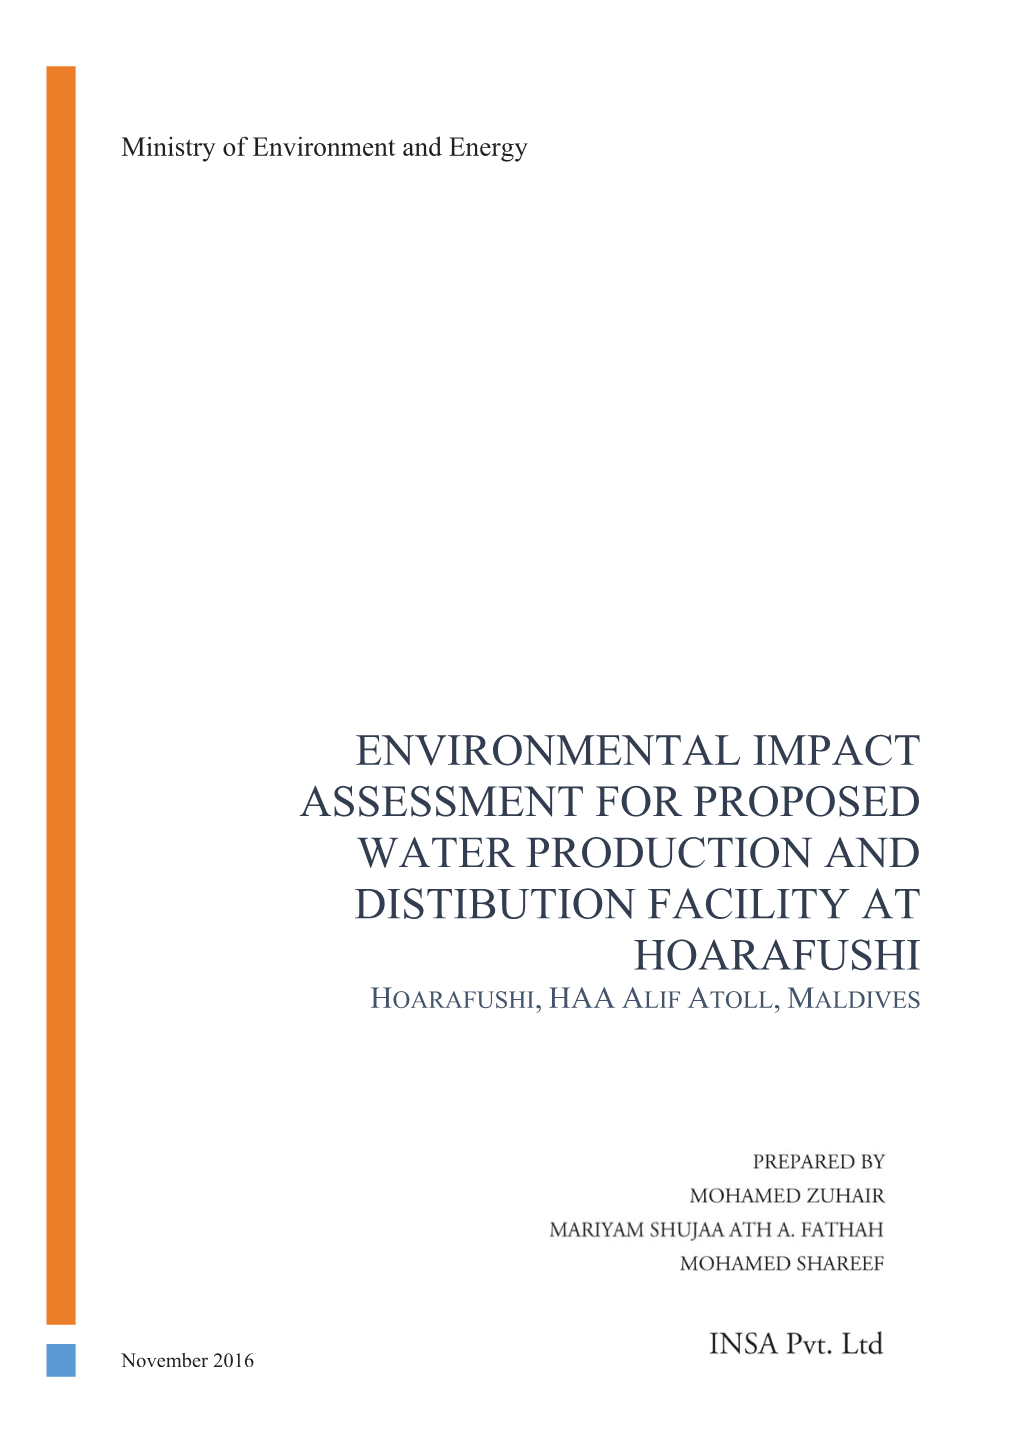 Environmental Impact Assessment for Proposed Water Production and Distibution Facility at Hoarafushi Hoarafushi, Haa Alif Atoll, Maldives